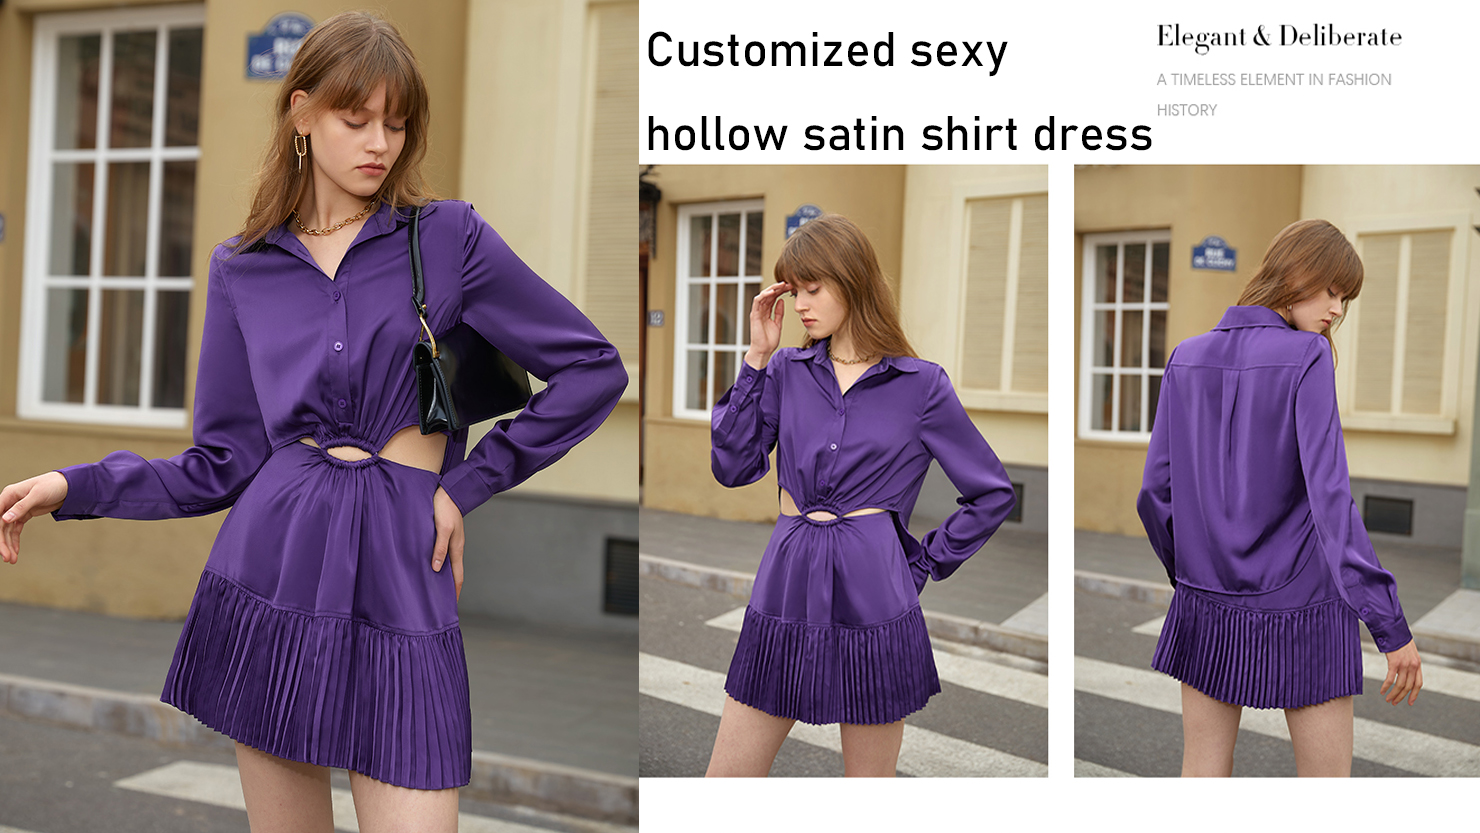 Customized sexy hollow satin shirt dress